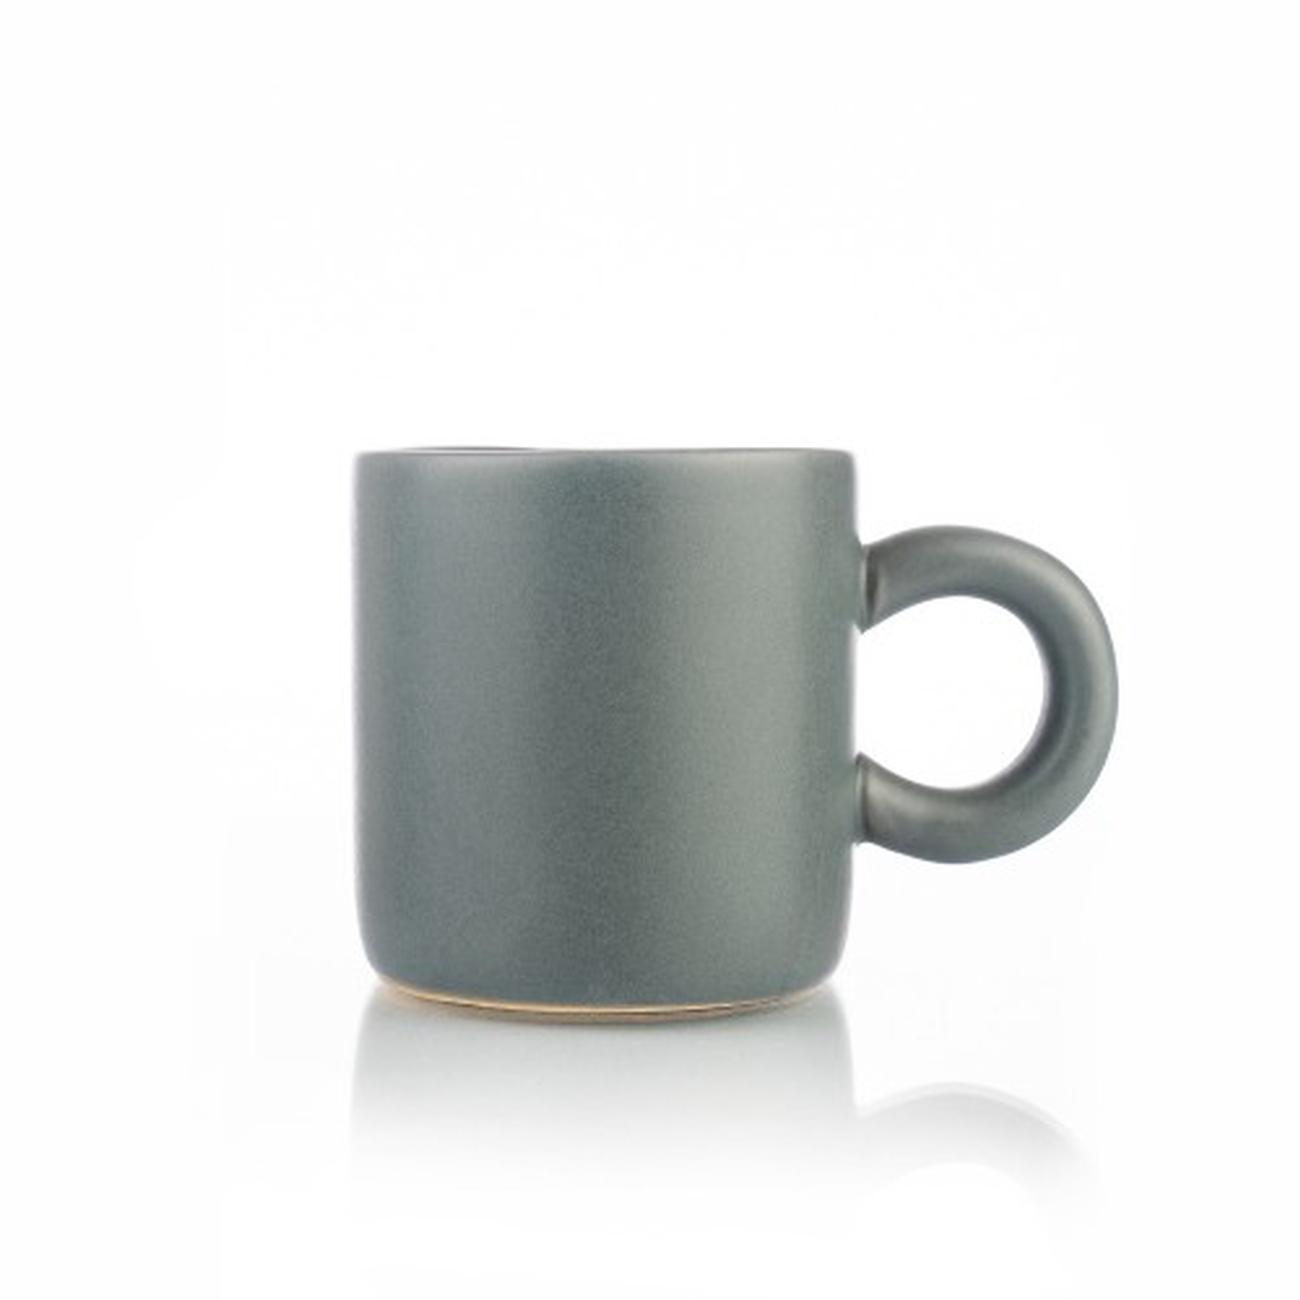 siip-matt-espresso-w-round-grey-handle - Siip Espresso Cup- Matte Grey With Round Handle